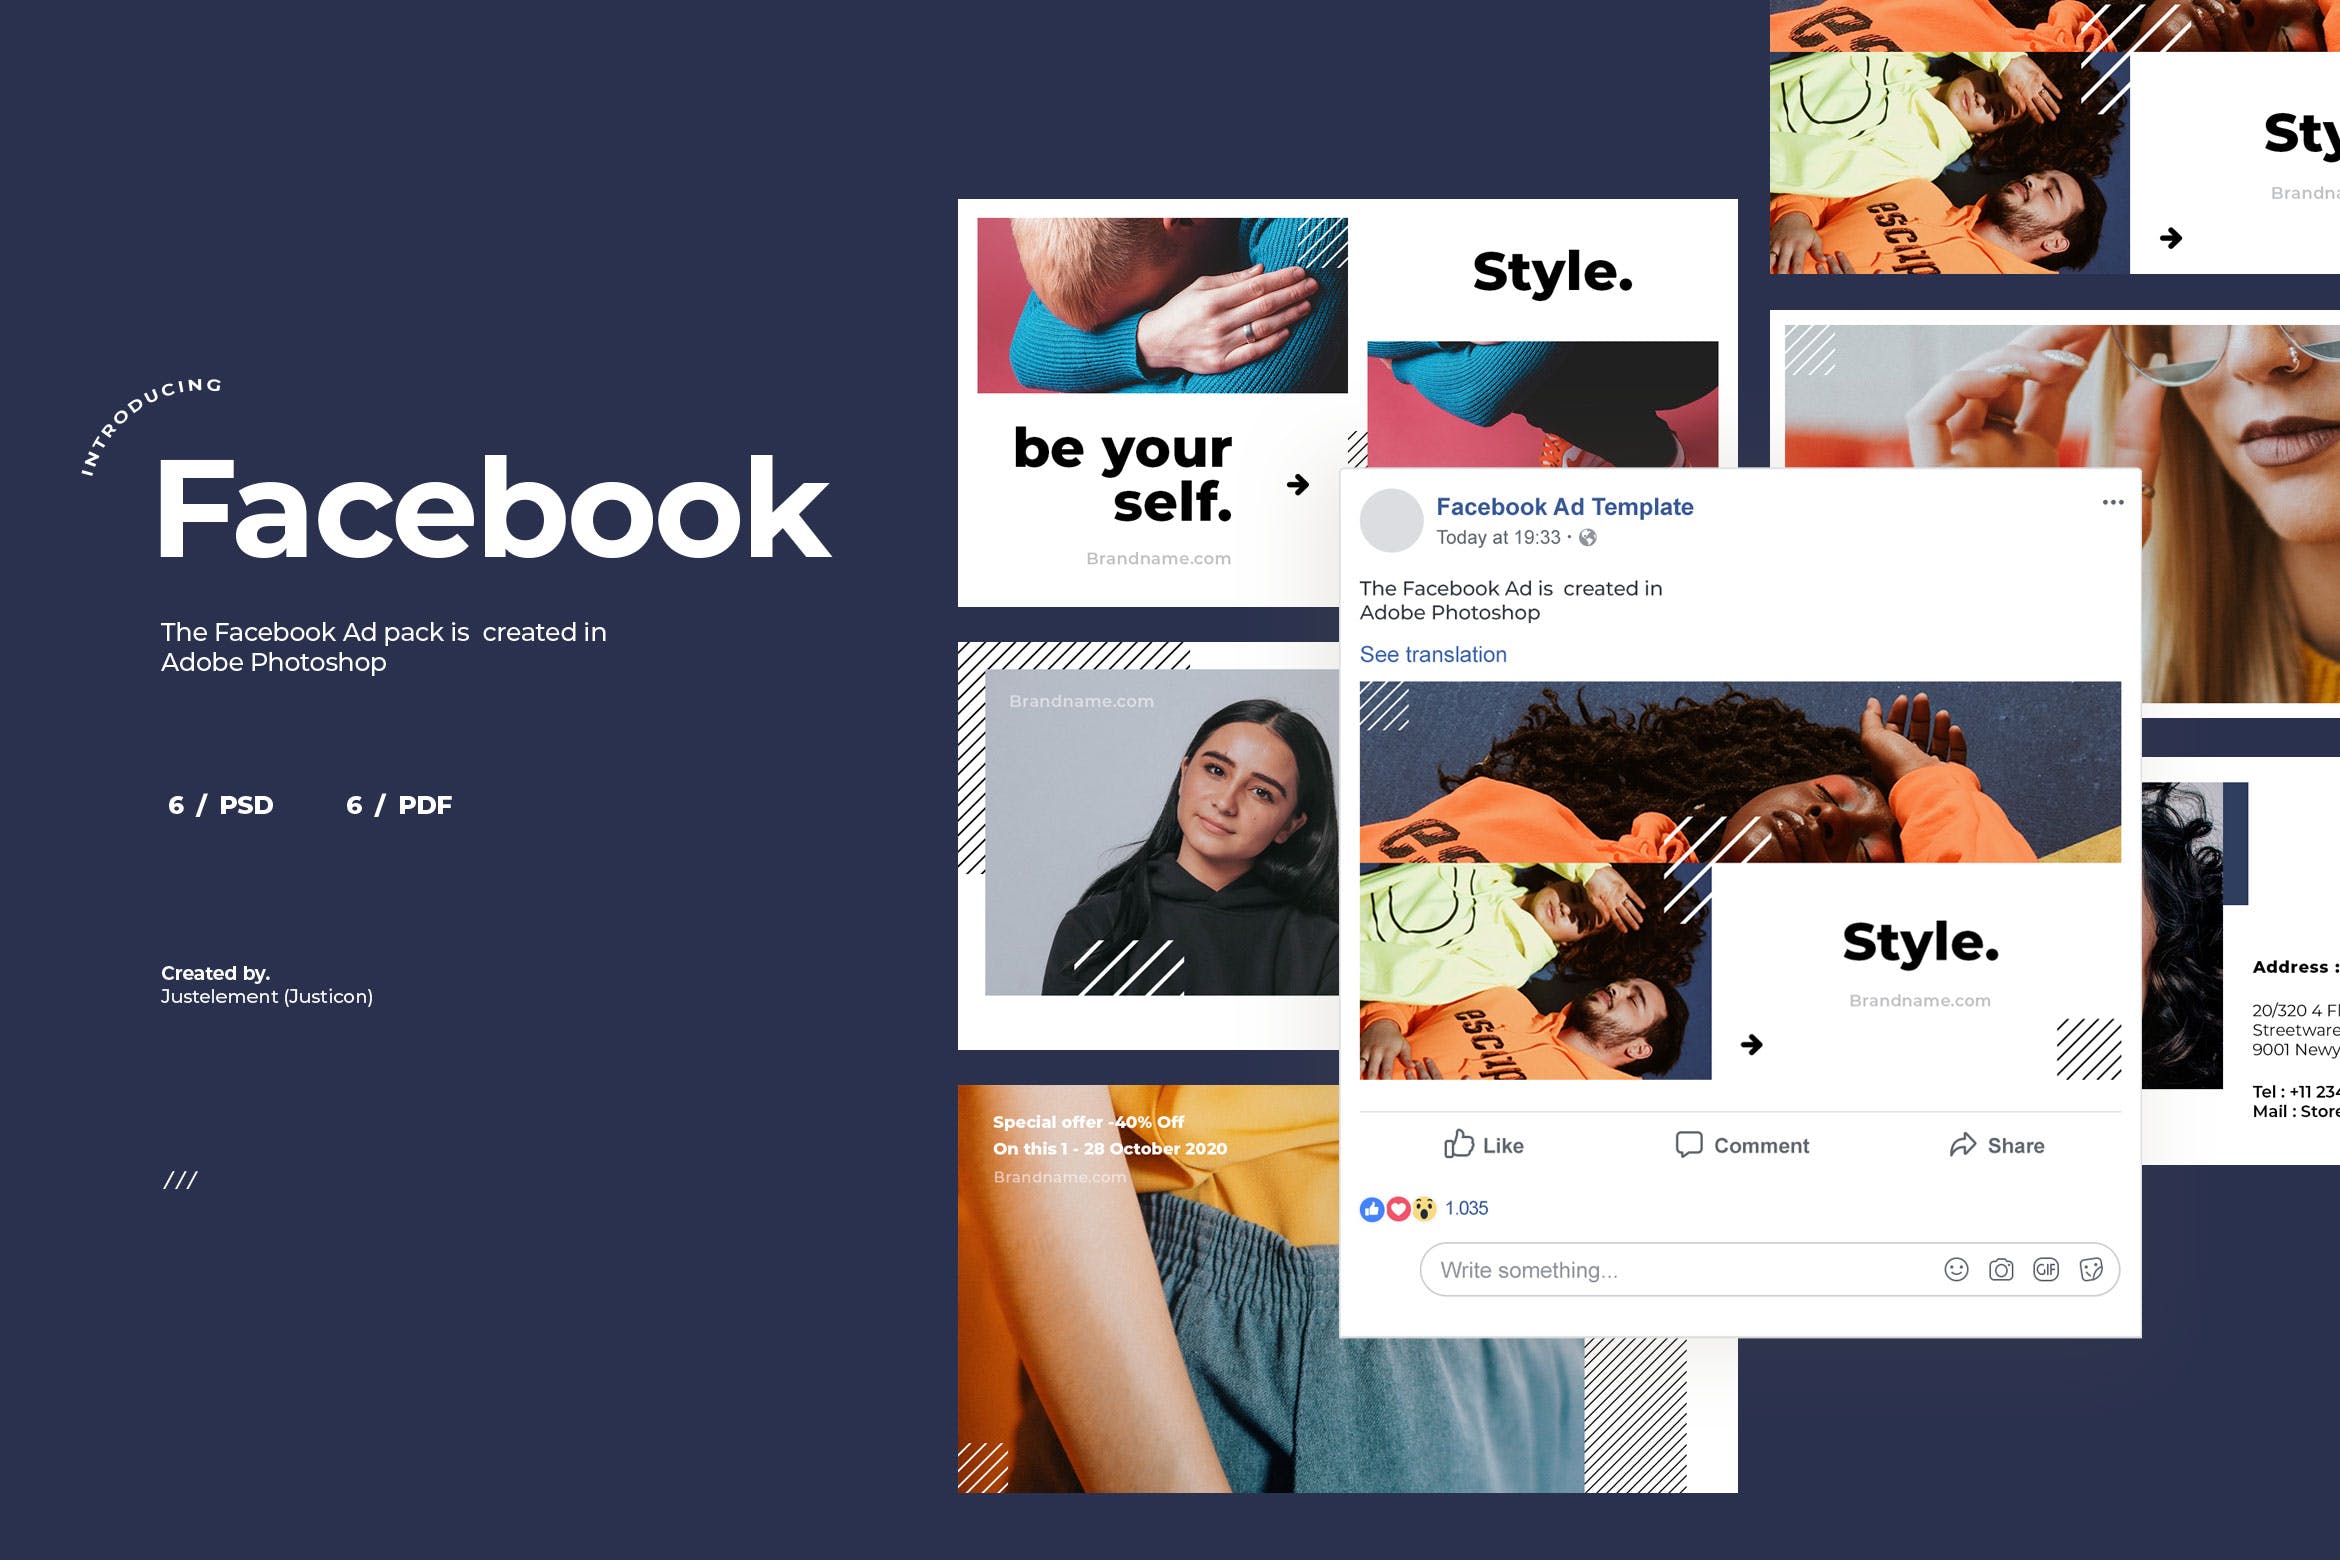 服饰品牌Facebook社交推广广告设计模板素材库精选v8 Facebook Ad Template Vol.8插图